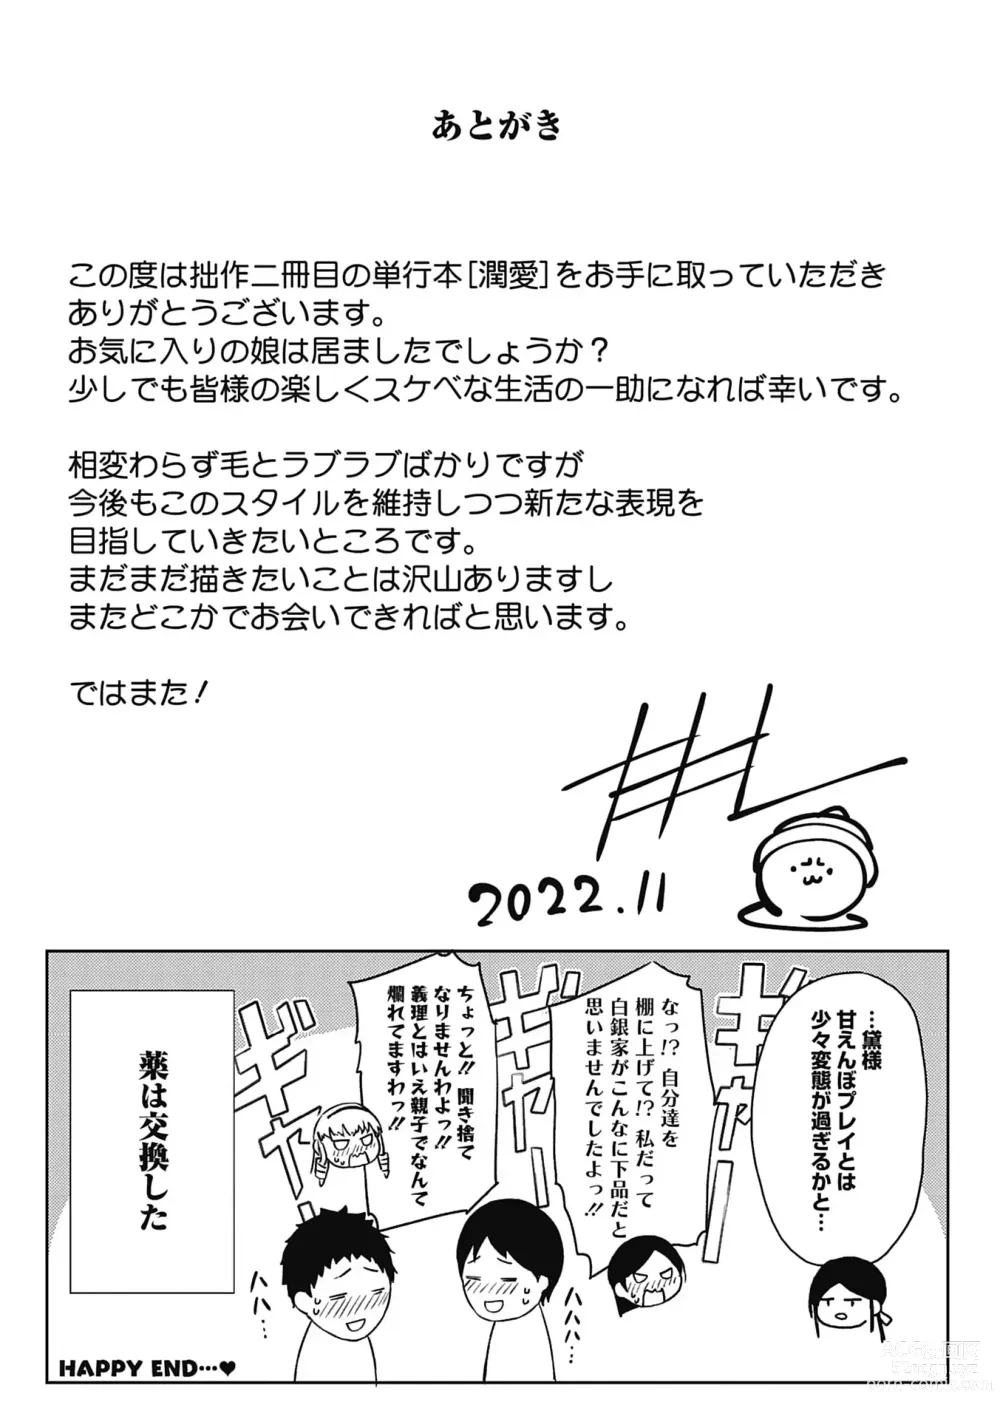 Page 205 of manga Jun Ai